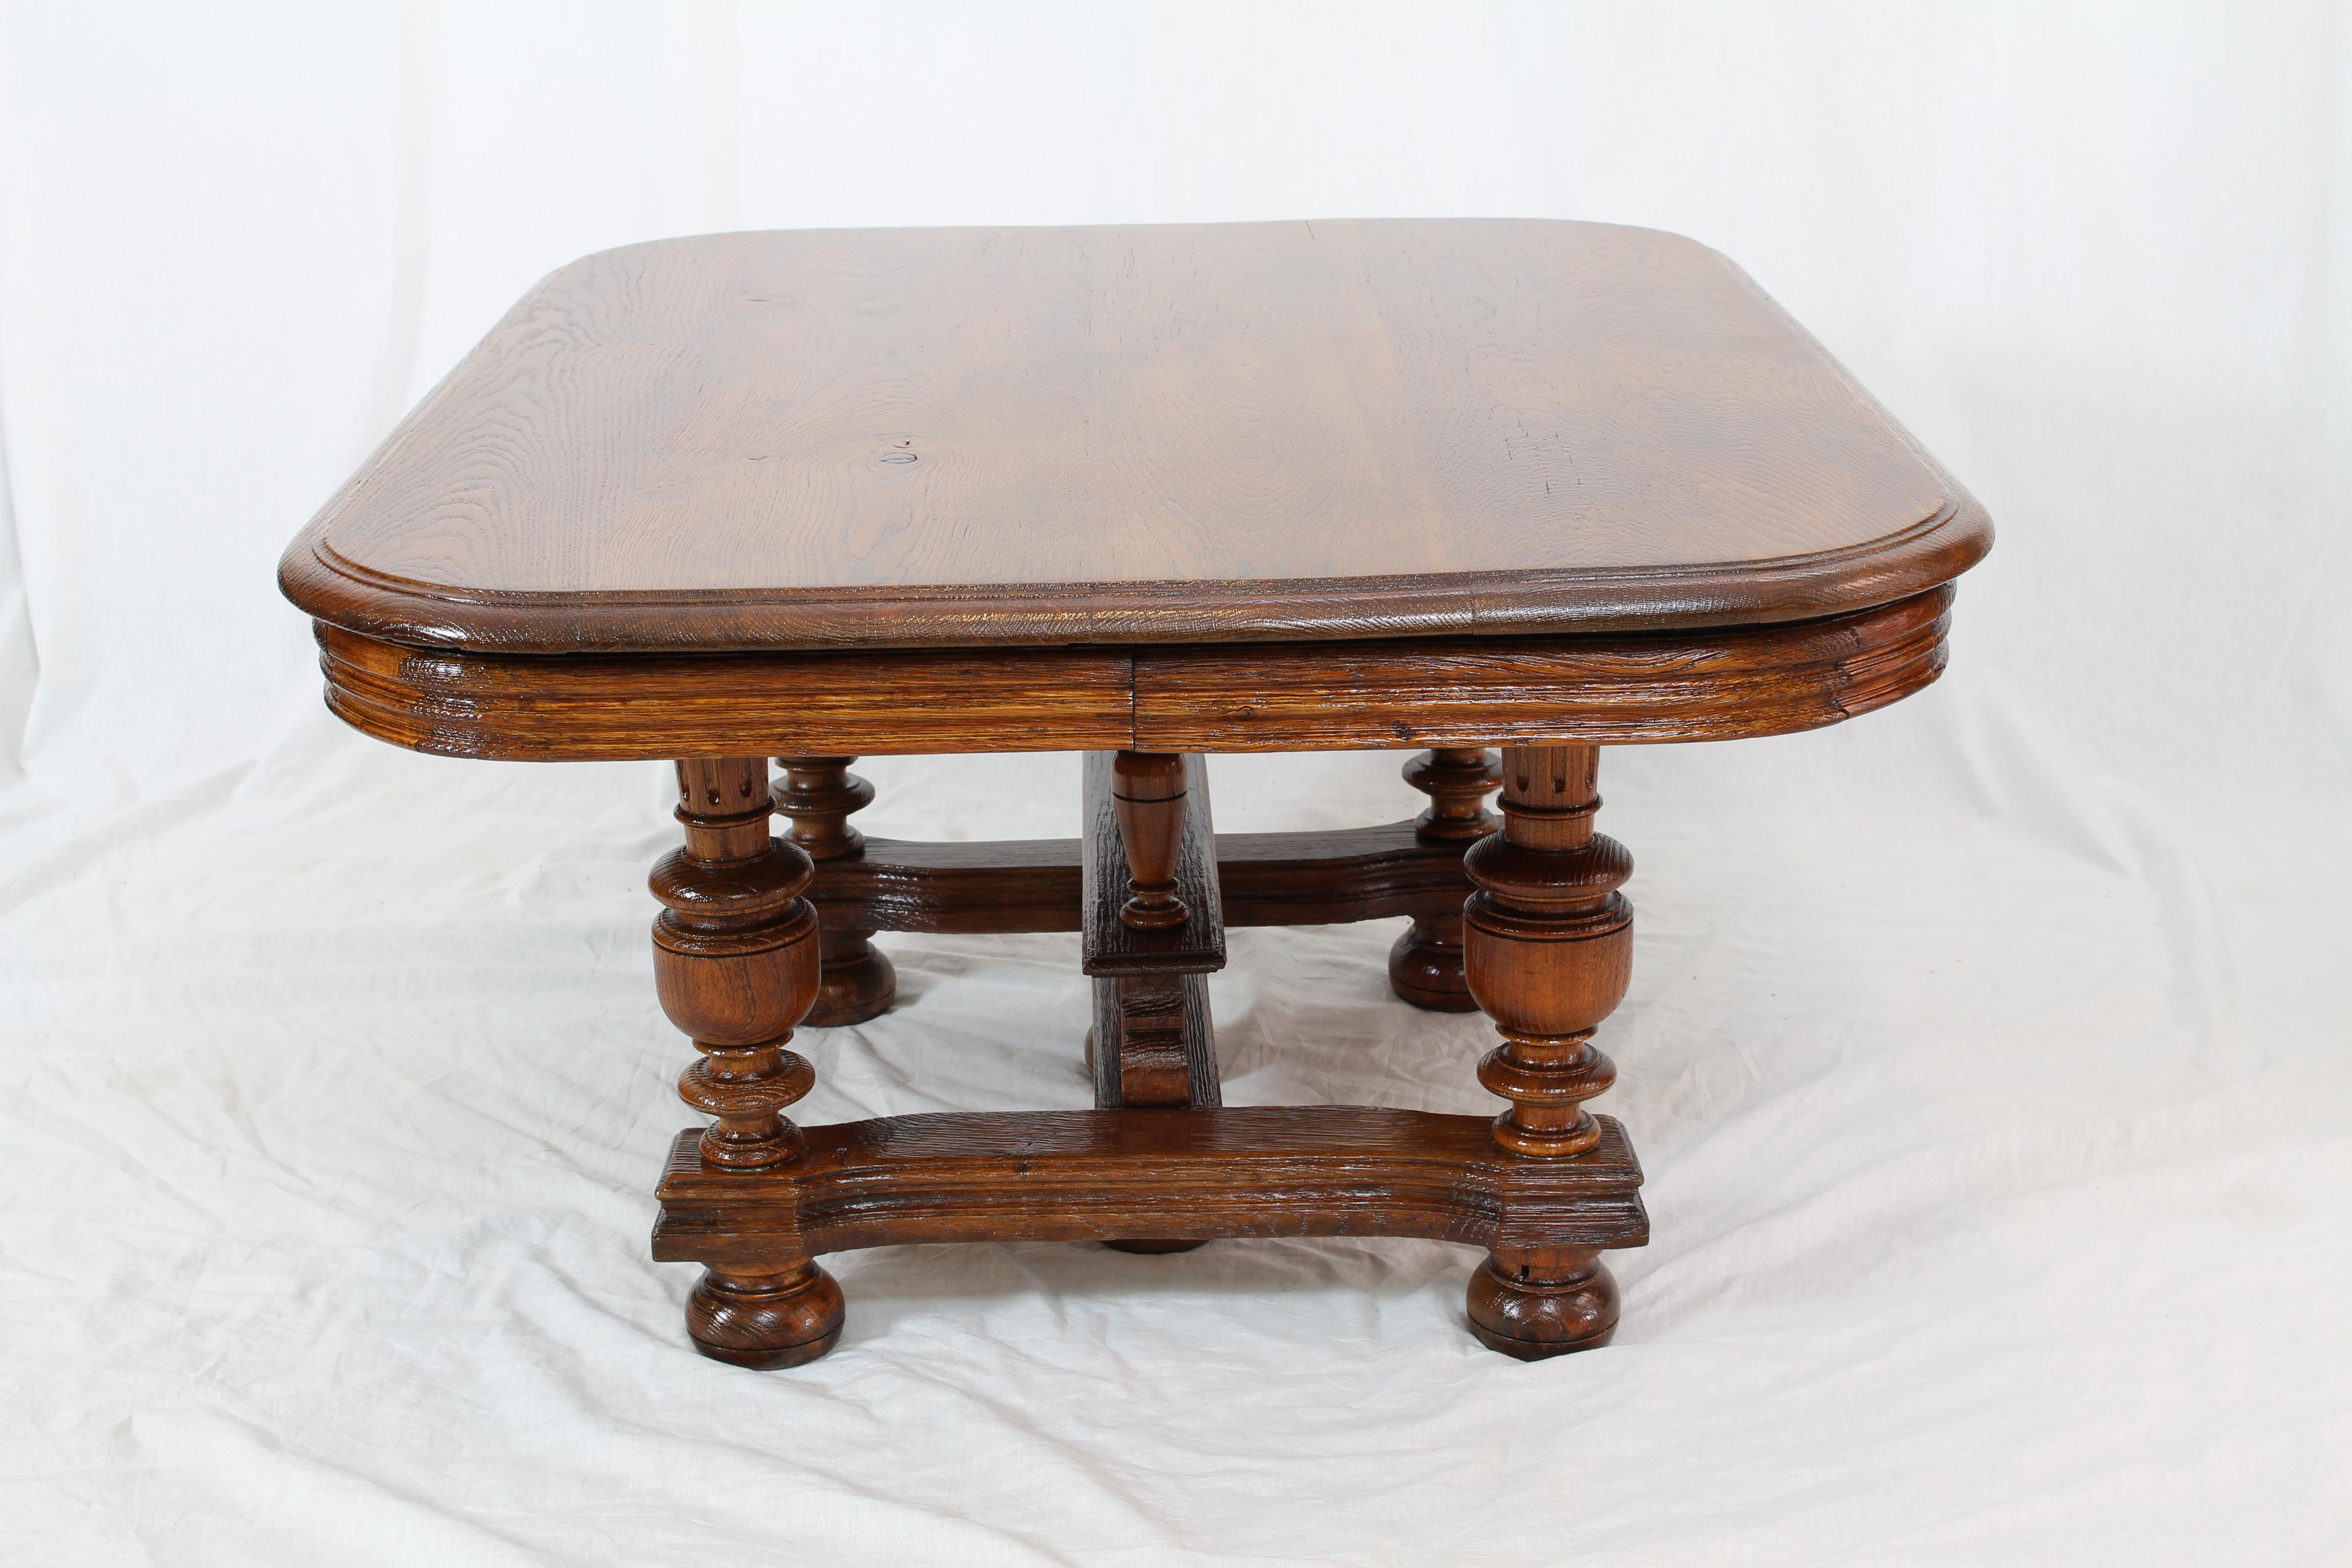 Couchtisch aus der Zeit von Henry Deux, um 1880 aus Frankreich in massivem Eichenholz. In sehr gutem restauriertem Zustand.
Sehr schöner niedriger Tisch, gute Proportionen.